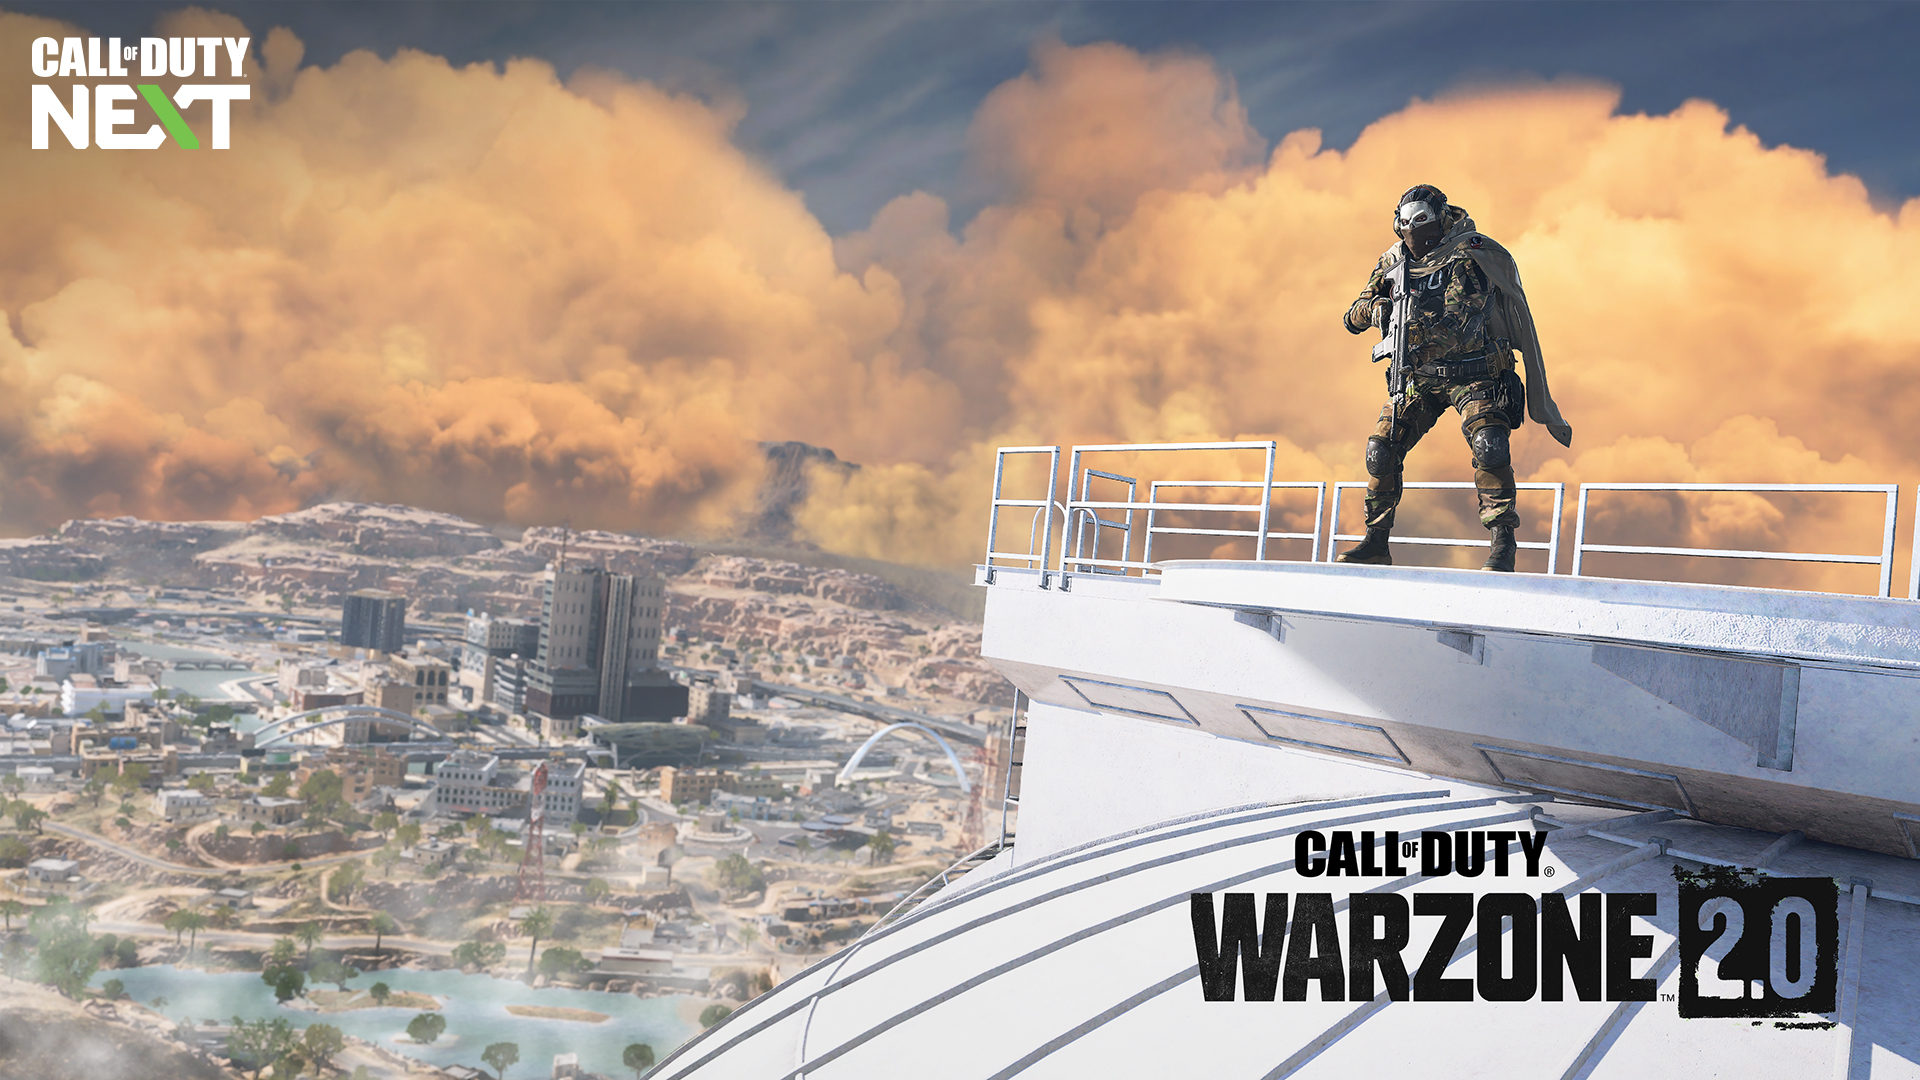 Cuối cùng người chơi cũng biết khi nào Call of Duty: Warzone 2.0 ra mắt